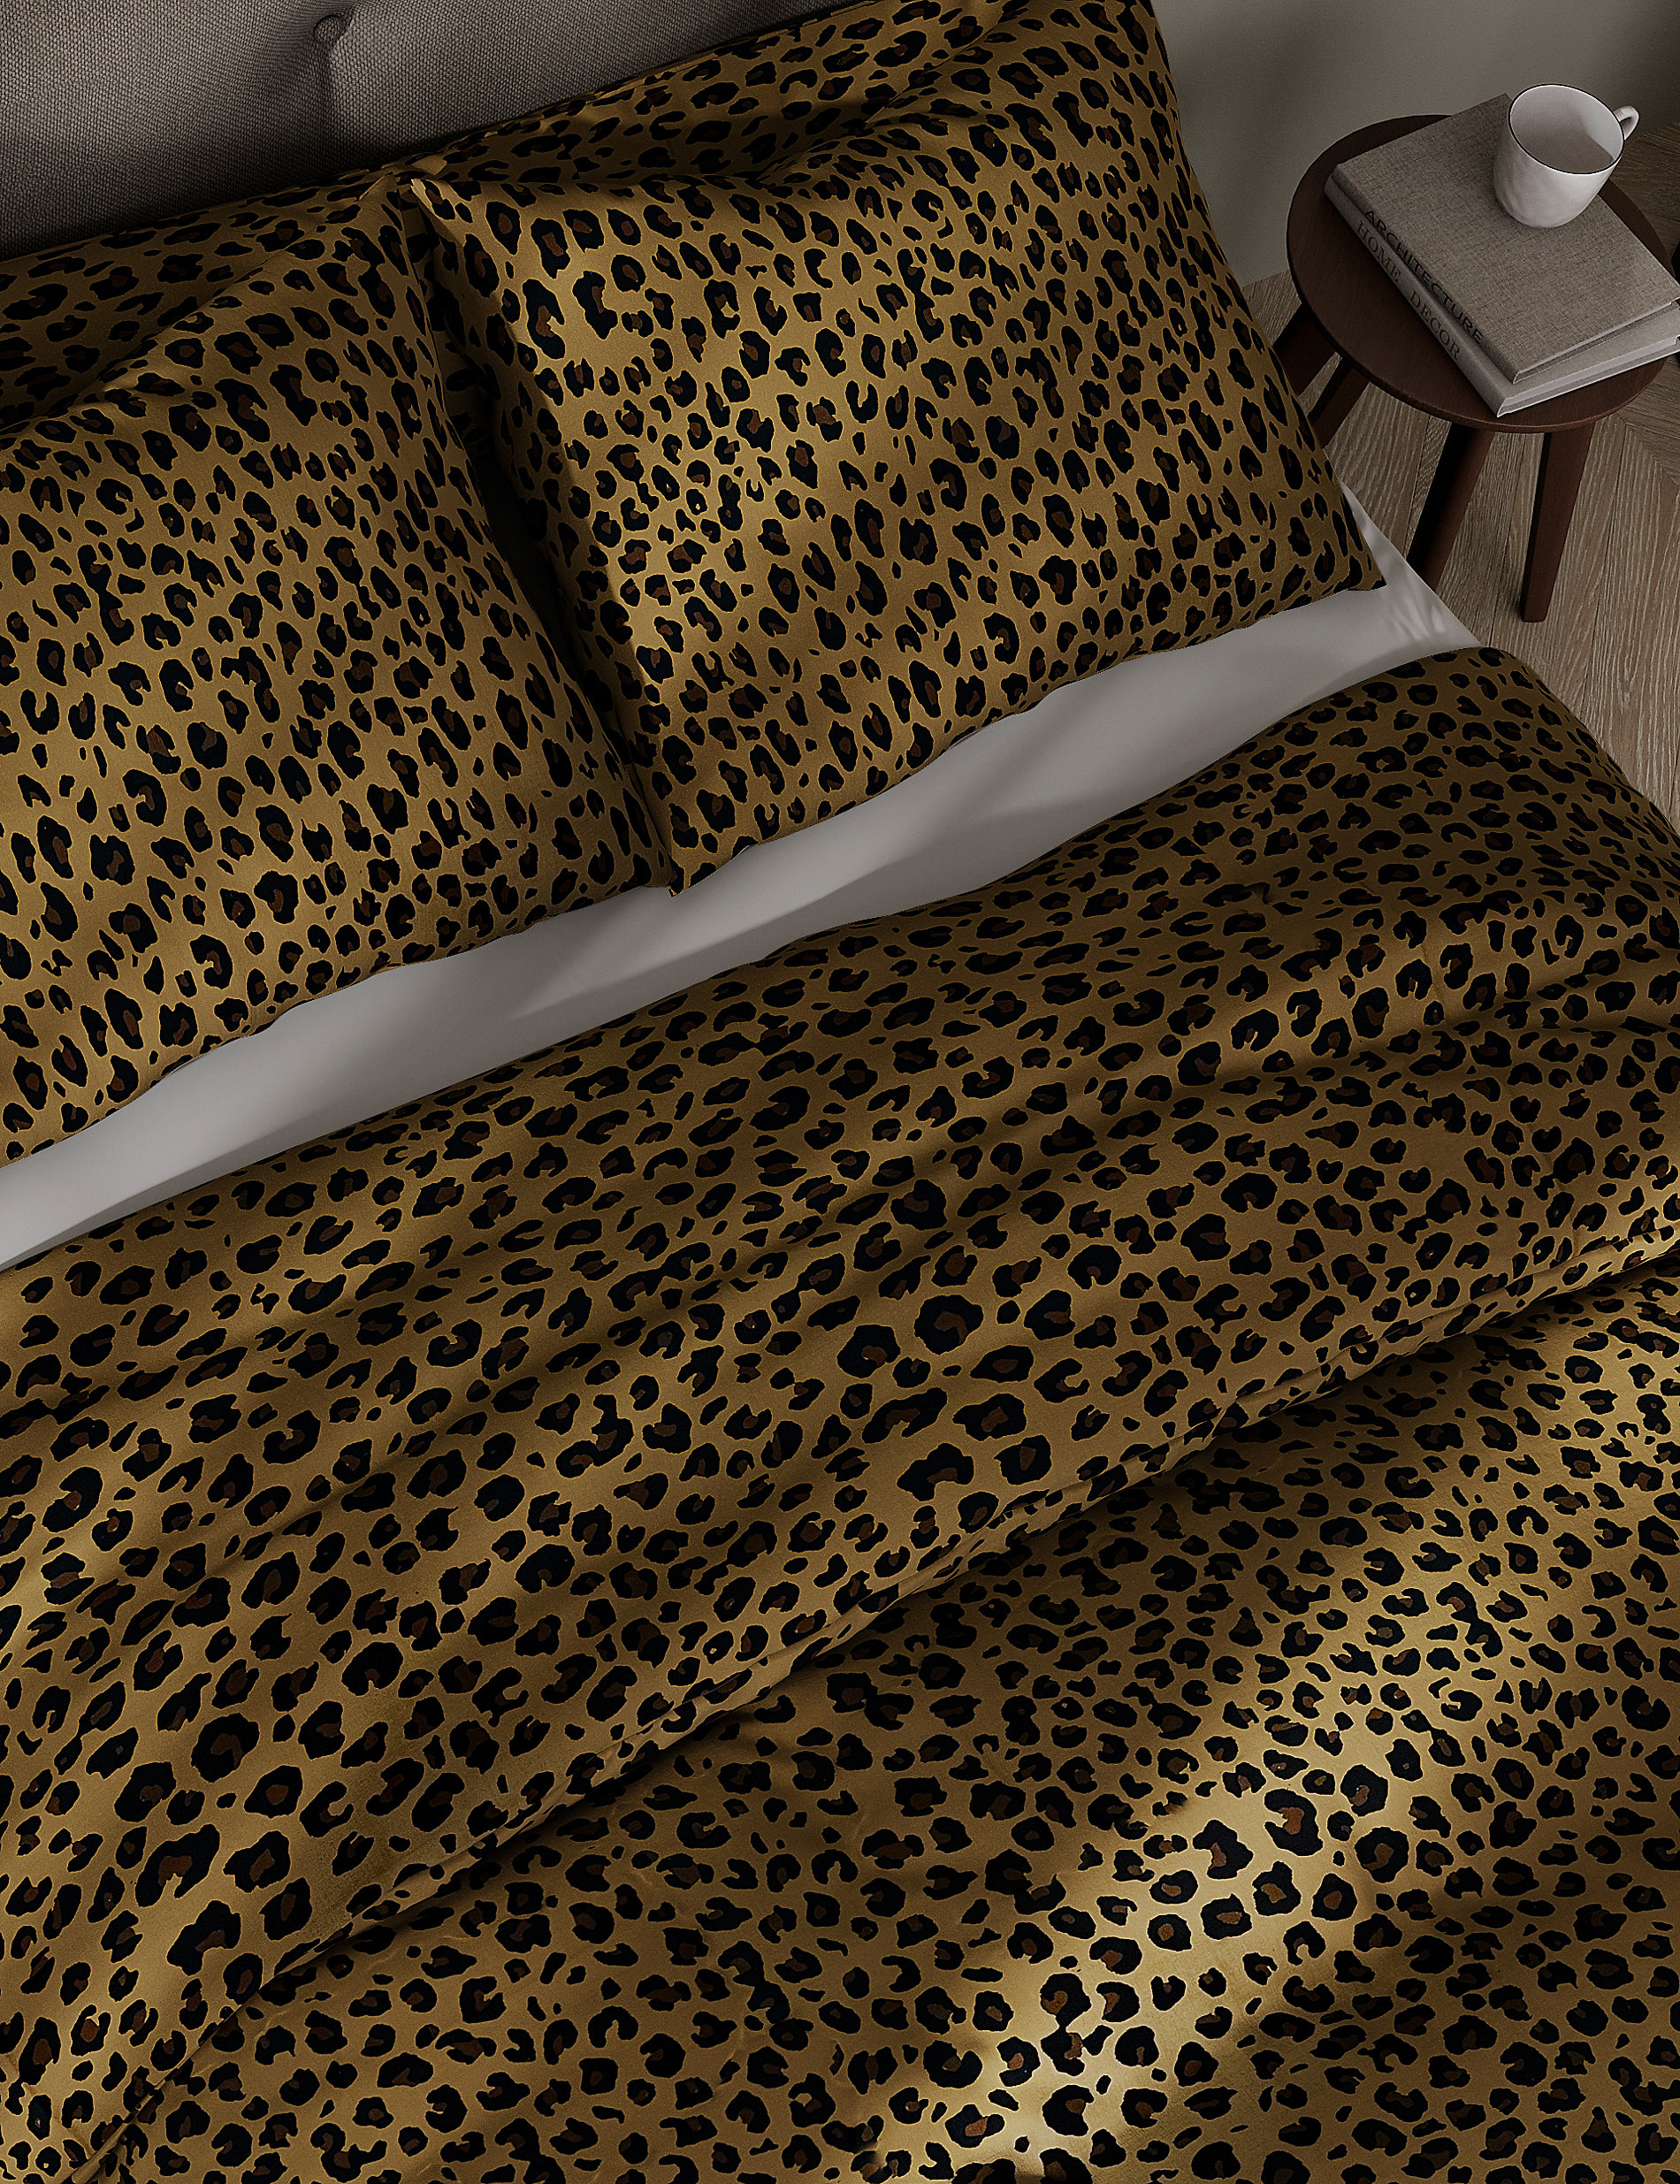 Cotton Blend Leopard Bedding Set | M&S US